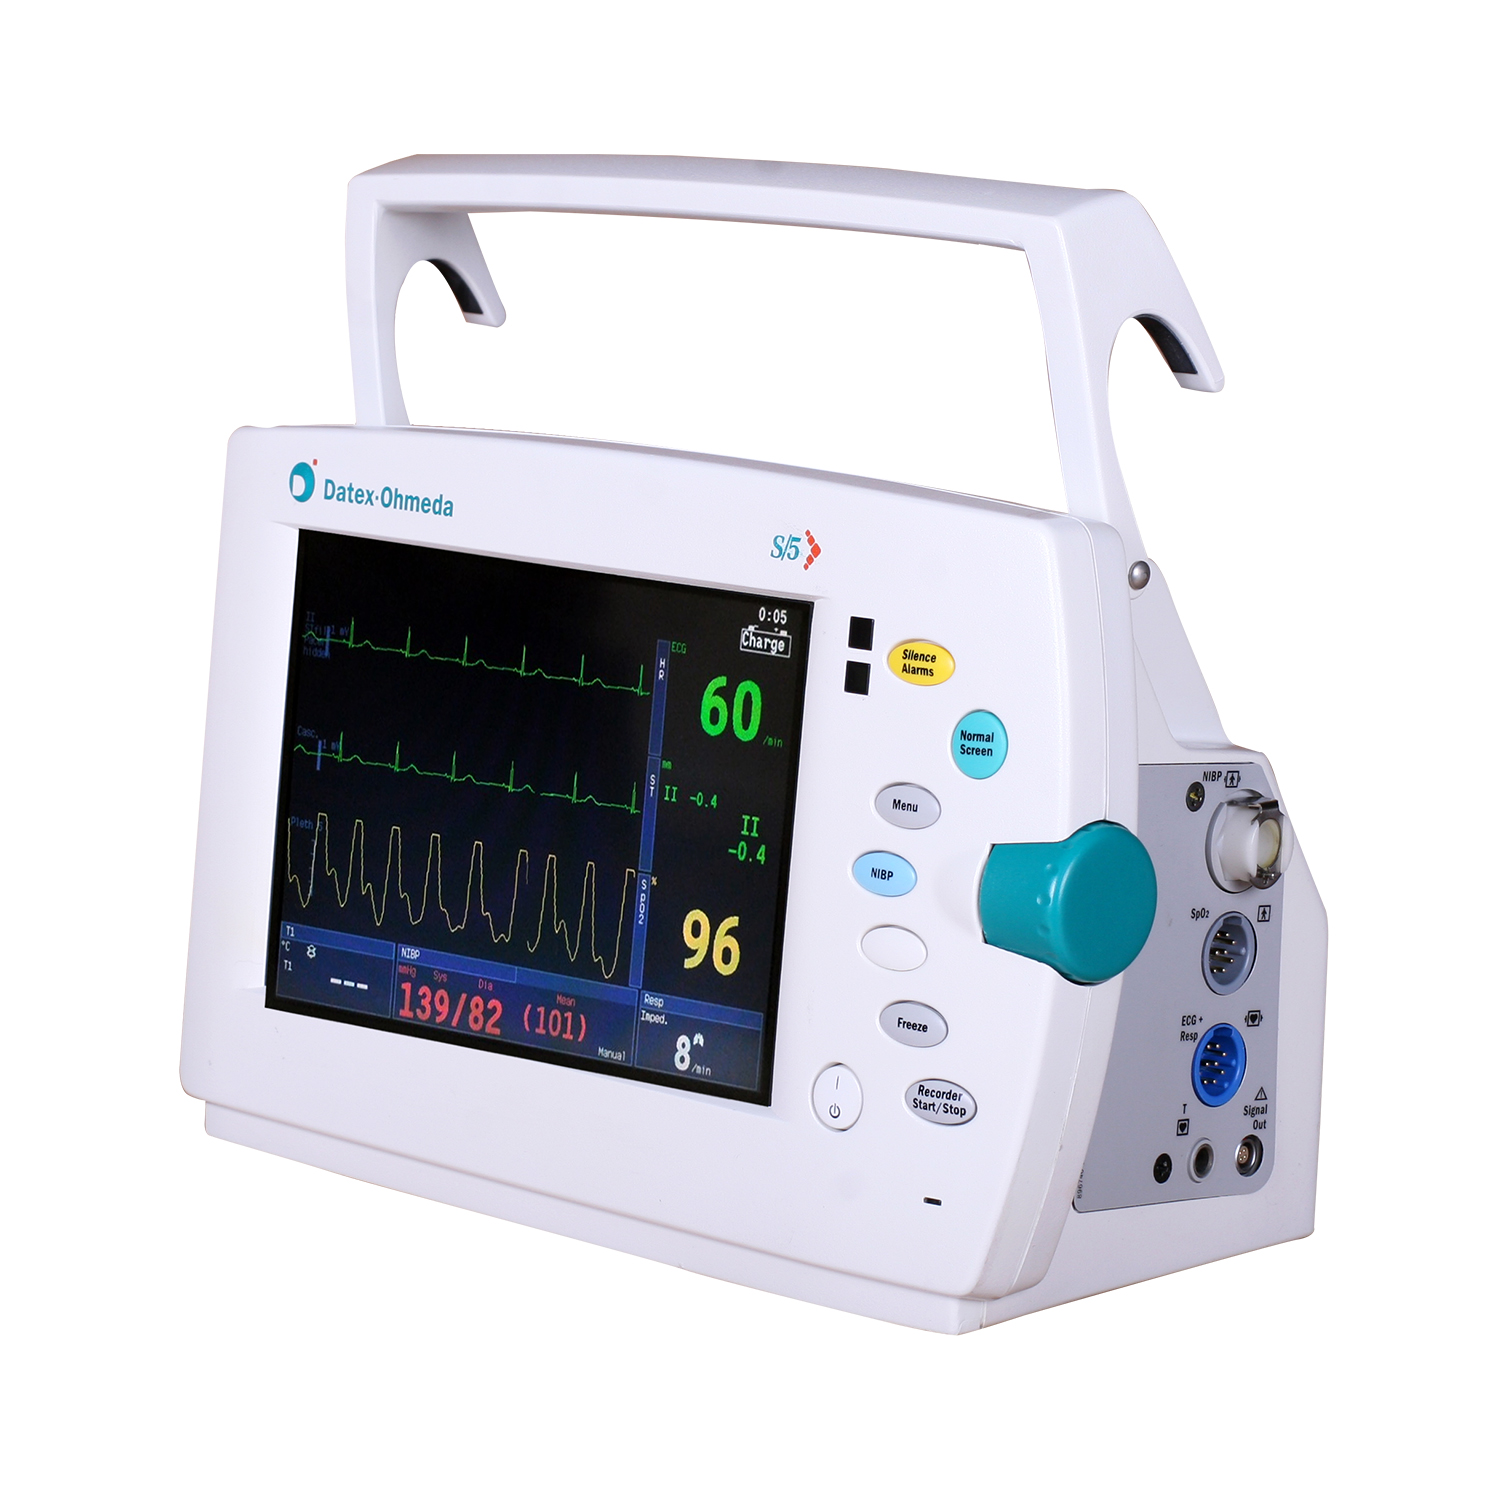 Reacondicionado Monitor Datex-Ohmeda S/5 - Avante Health Solutions